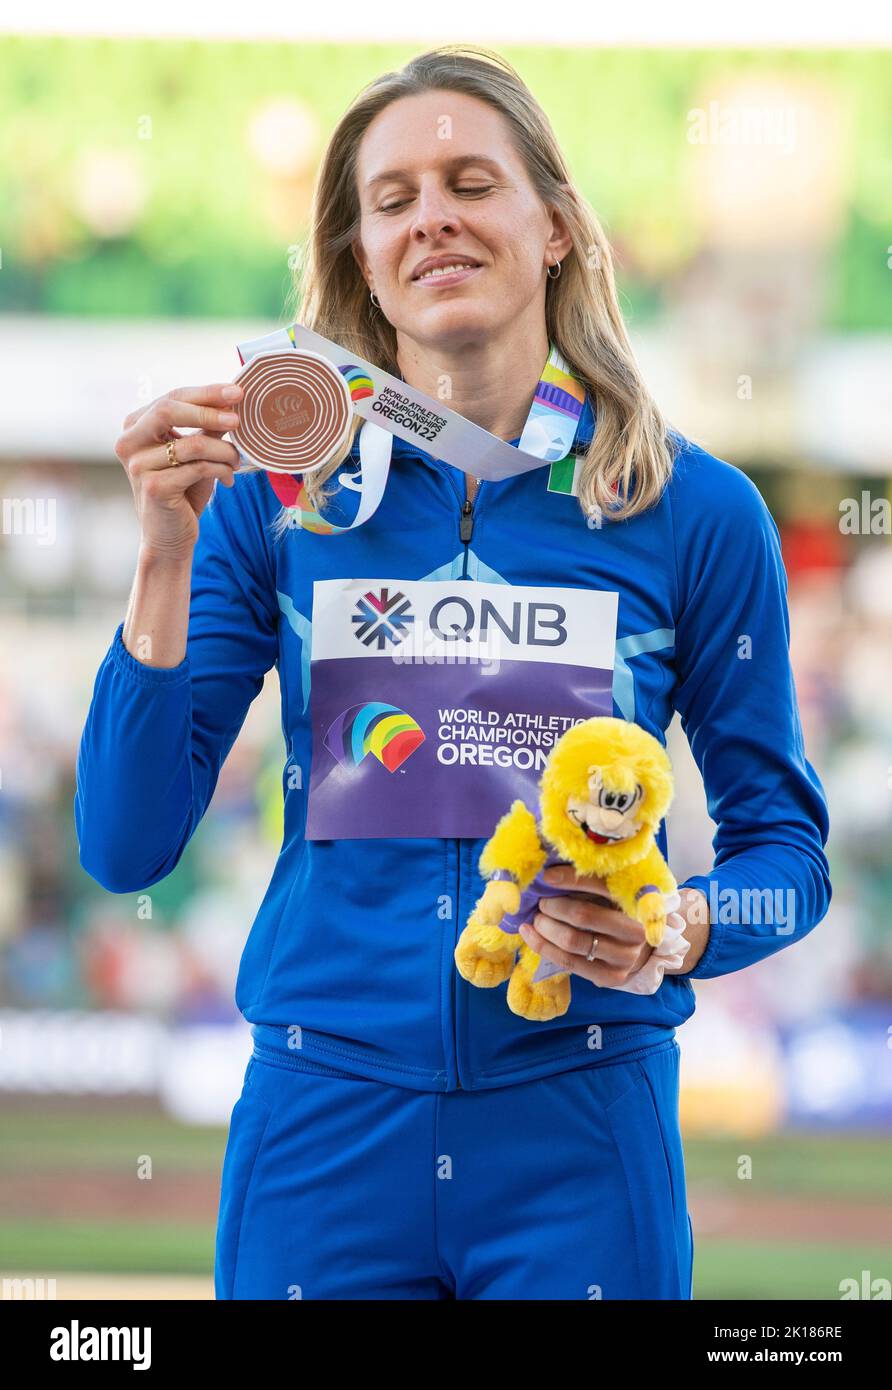 Elena Vallortigara, de l’Italie, remise de la médaille de bronze pour le saut en hauteur des femmes aux Championnats du monde d’athlétisme, Hayward Field, Eugene, Oregon, États-Unis Banque D'Images